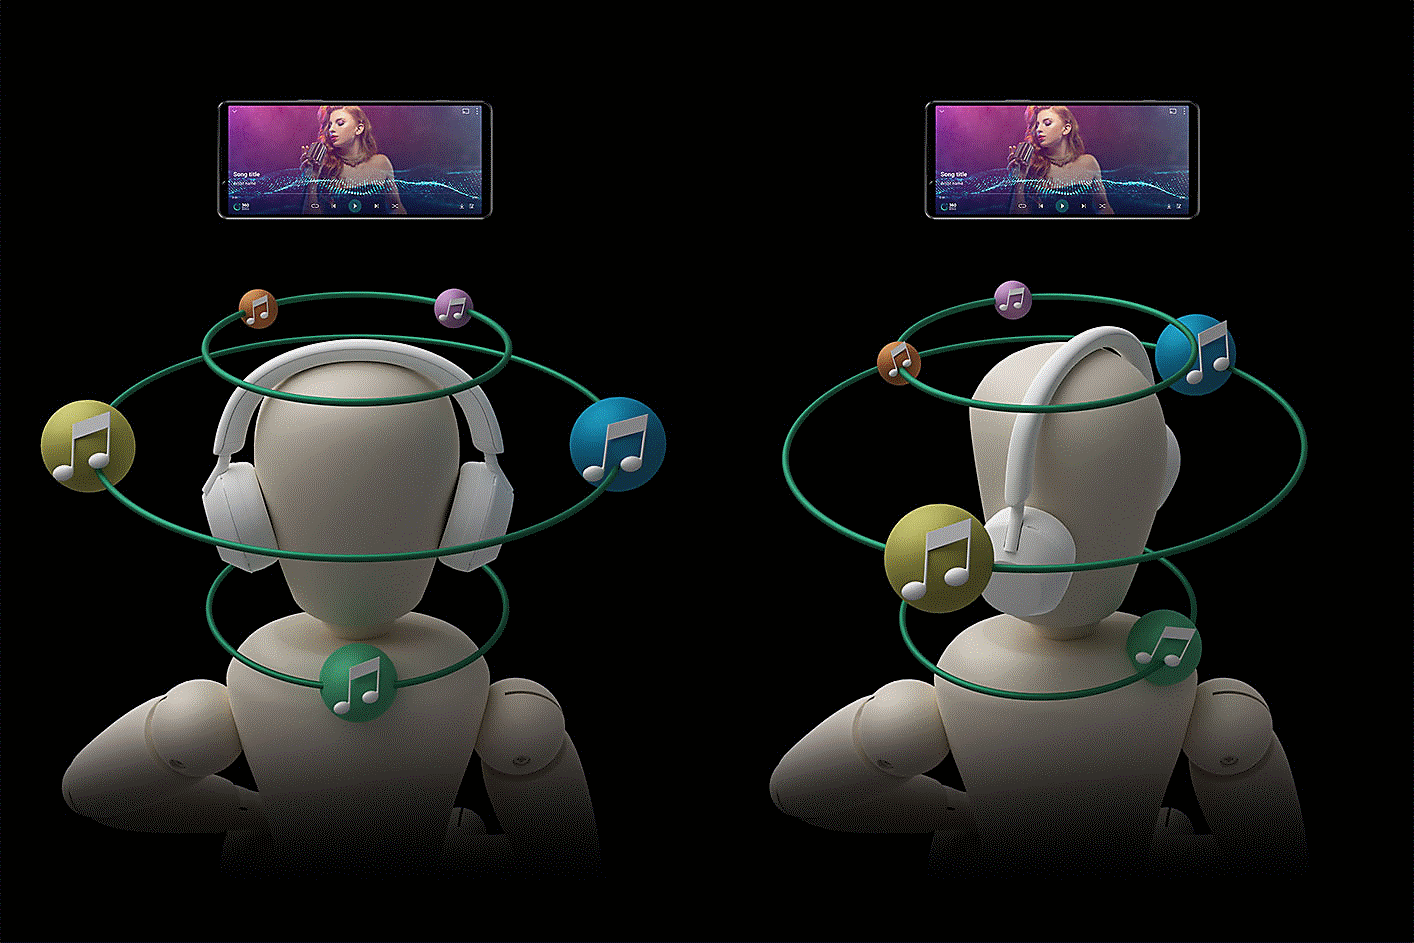 Dos personas con audífonos rodeadas de burbujas de sonido. La cabeza a la izquierda está recta, mientras que la de la derecha y las burbujas están volteadas